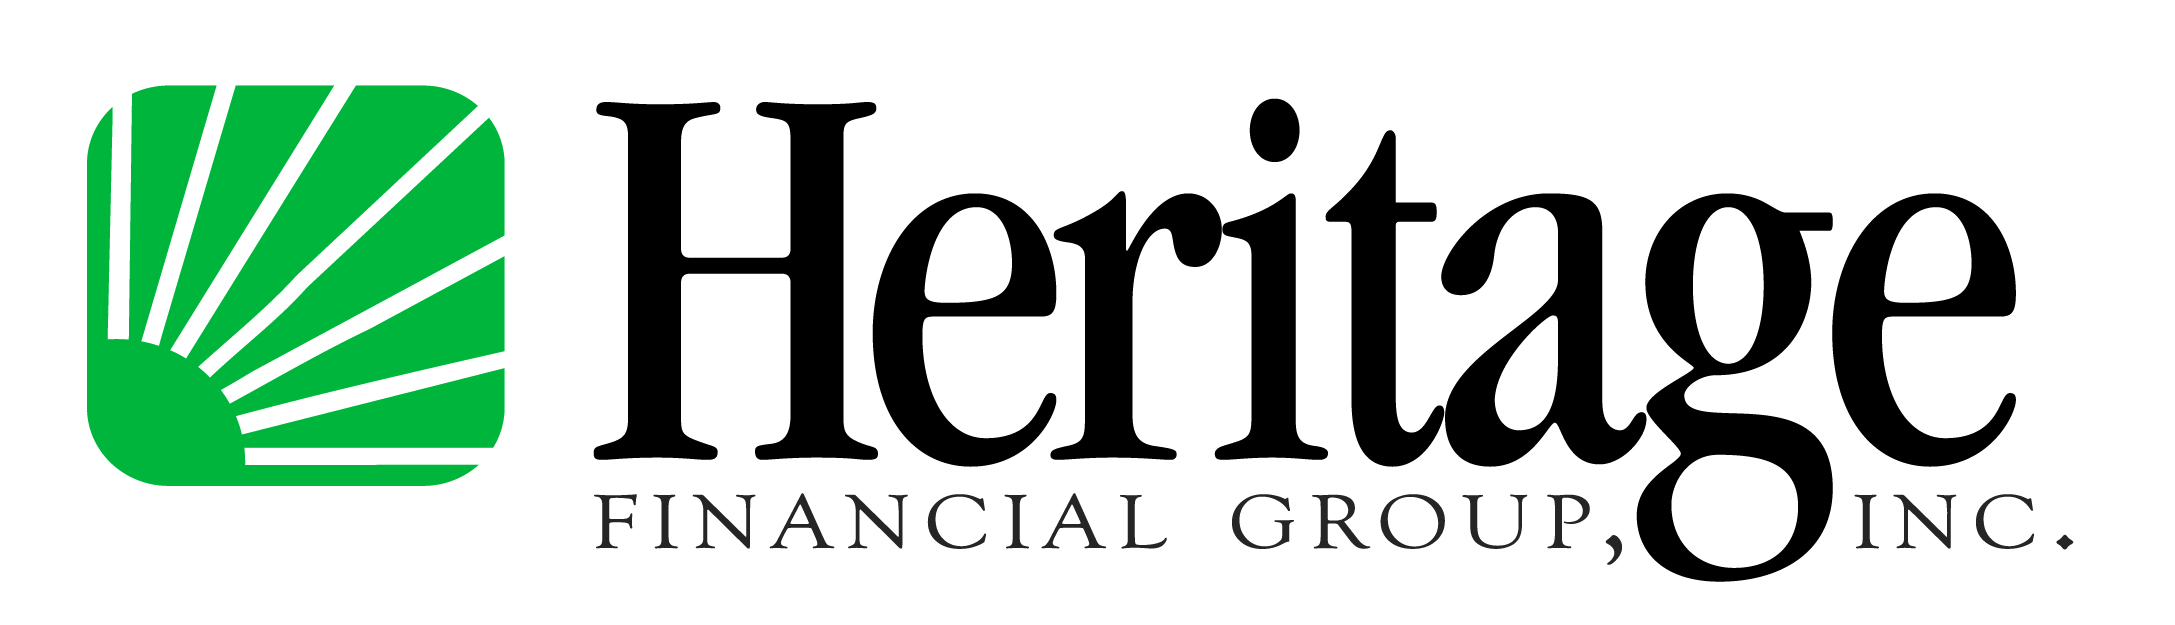 HeritageBank Fin Group- Logo- 2010 rev-01